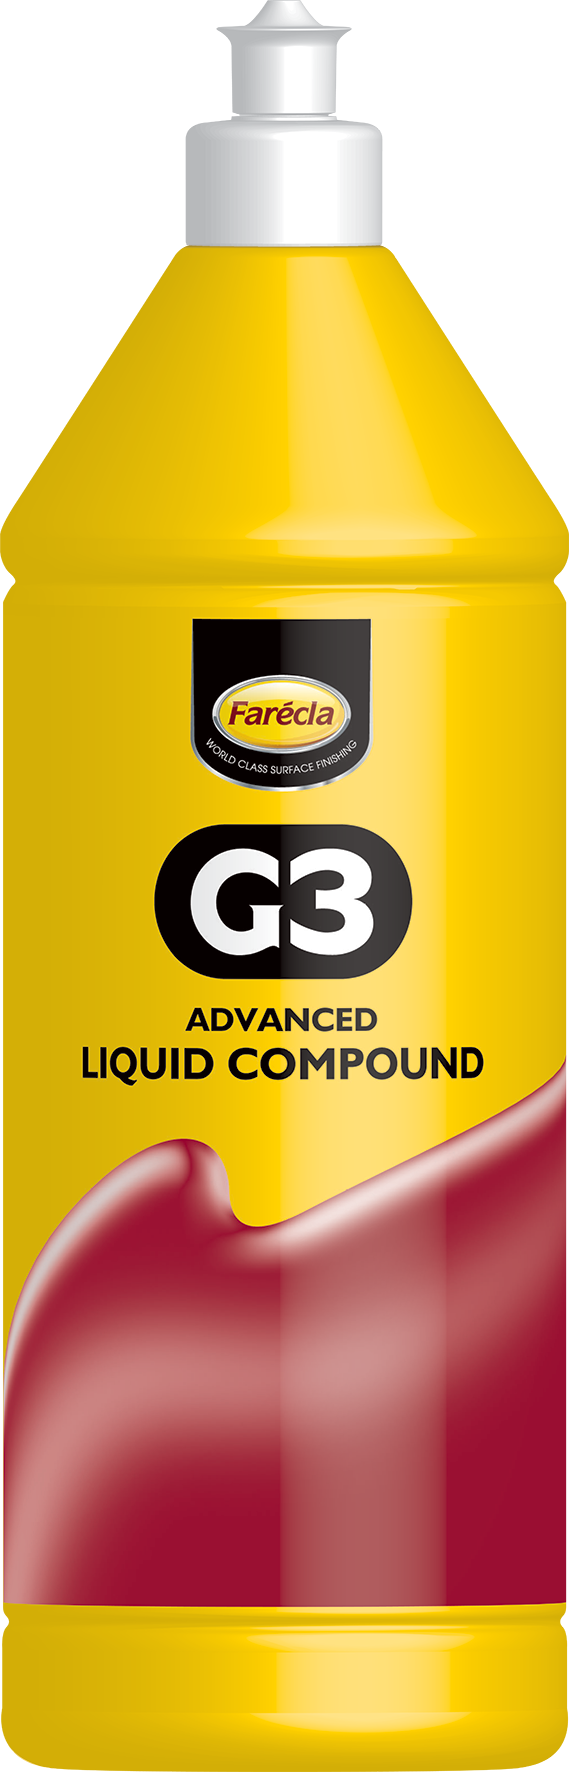 Farecla G3 Advanced Liquid Compound 1L